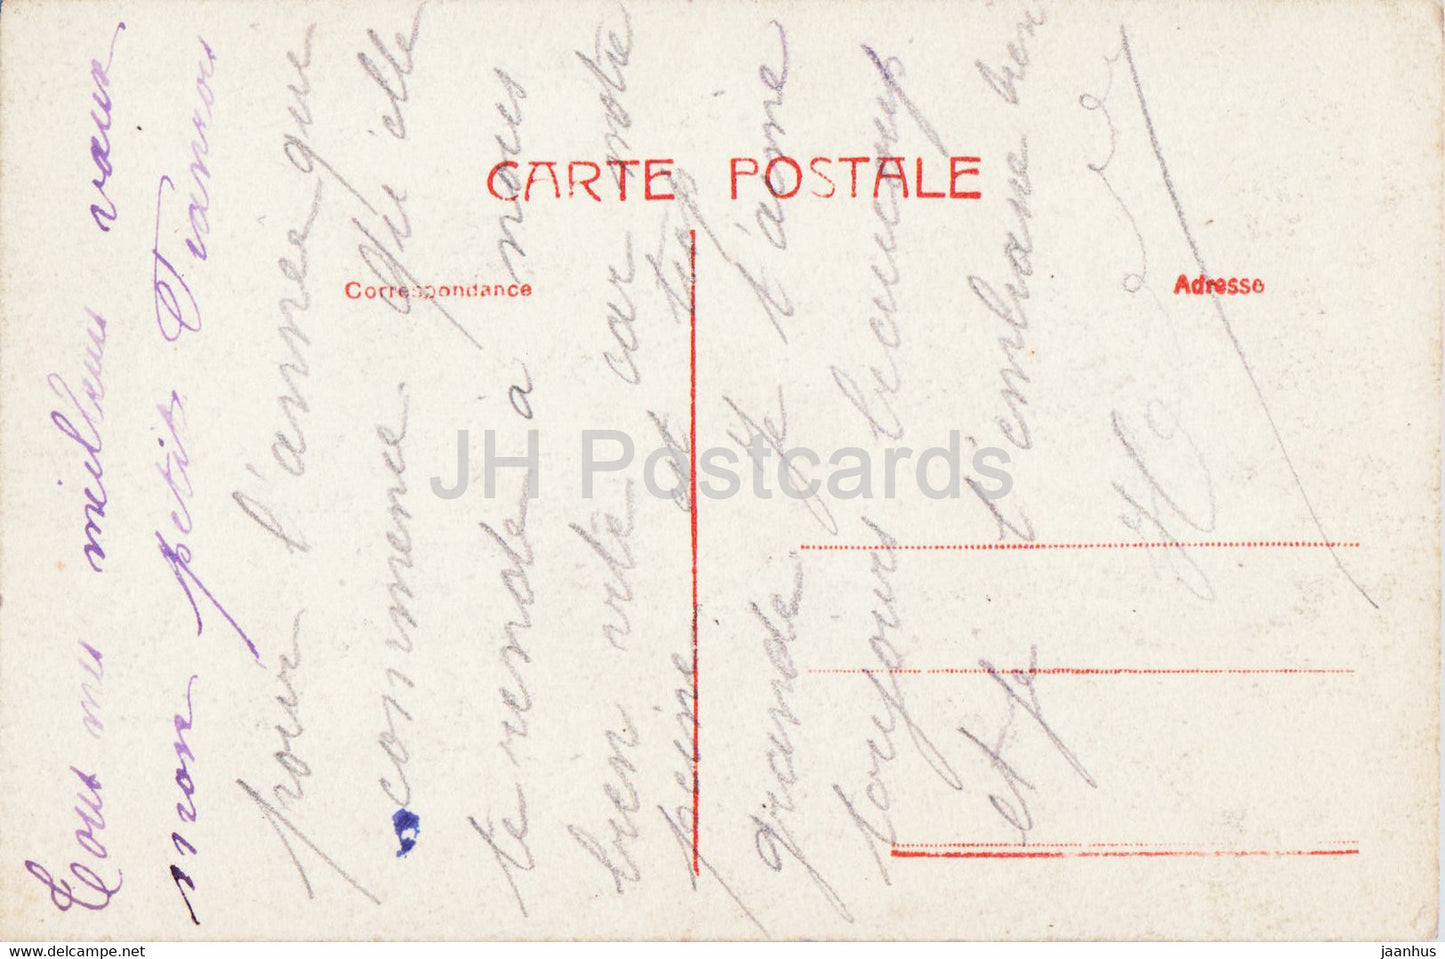 Neujahrsgrußkarte – Bonne Annee – Frau – Blumen – alte Postkarte – 1918 – Frankreich – gebraucht